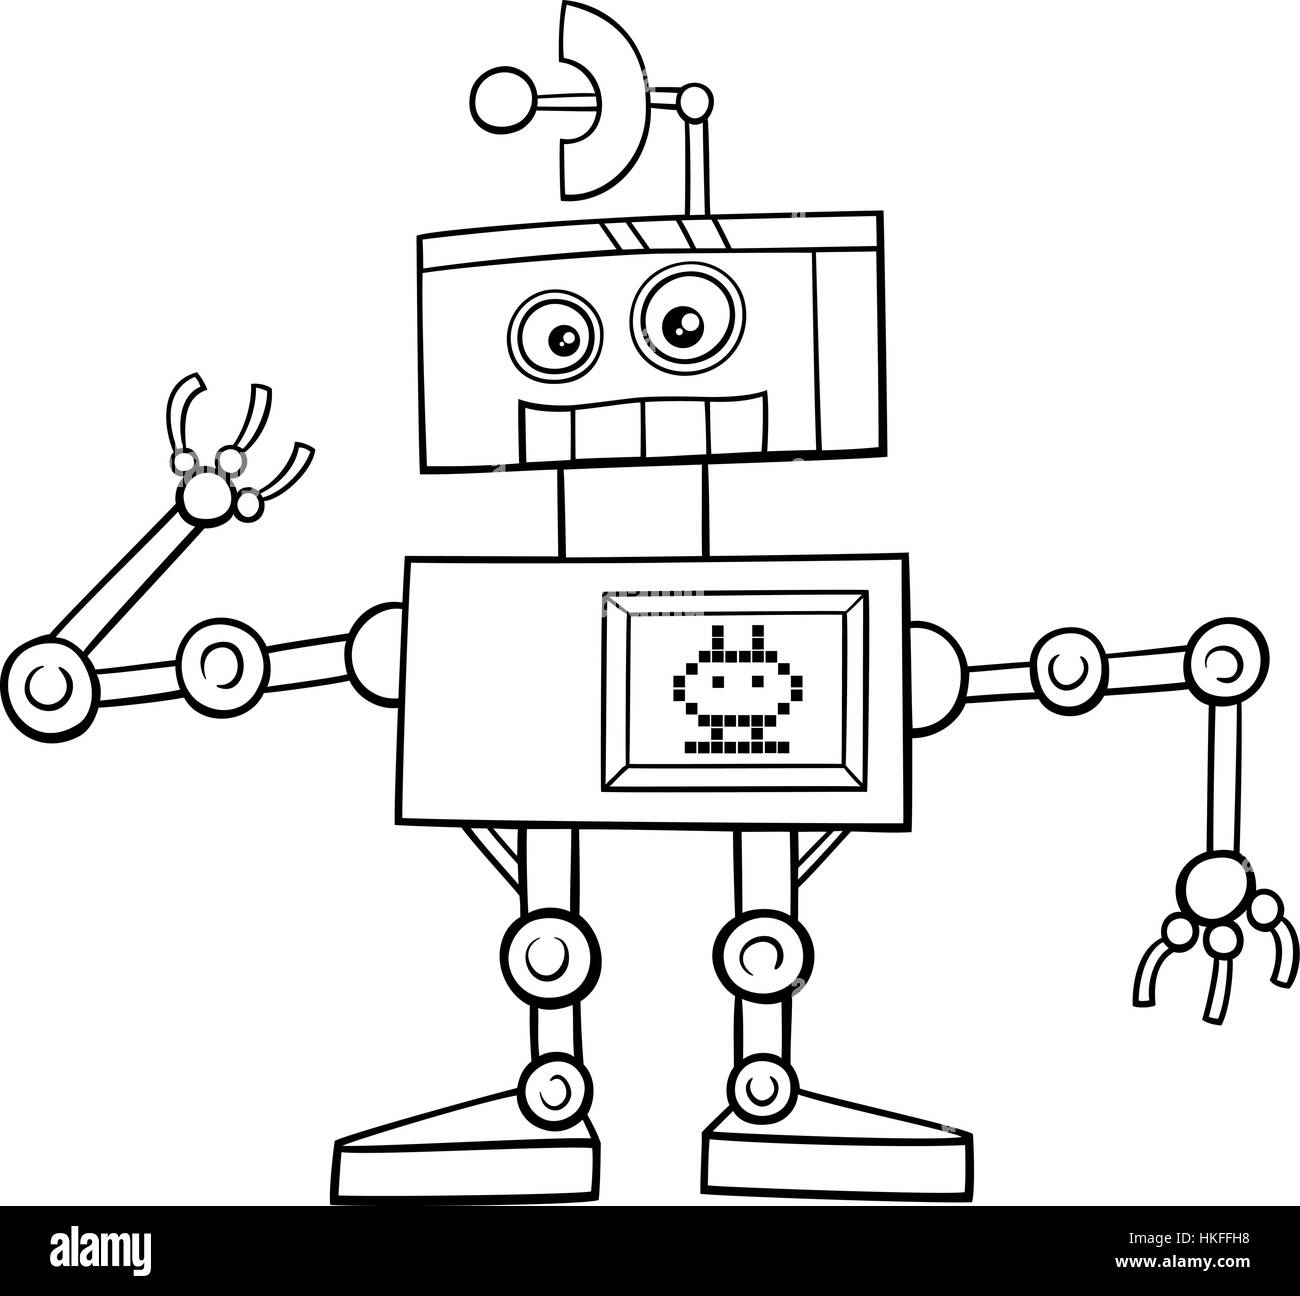 https://c8.alamy.com/compes/hkffh8/caricatura-en-blanco-y-negro-ilustracion-del-personaje-de-fantasia-divertido-robot-pagina-para-colorear-hkffh8.jpg